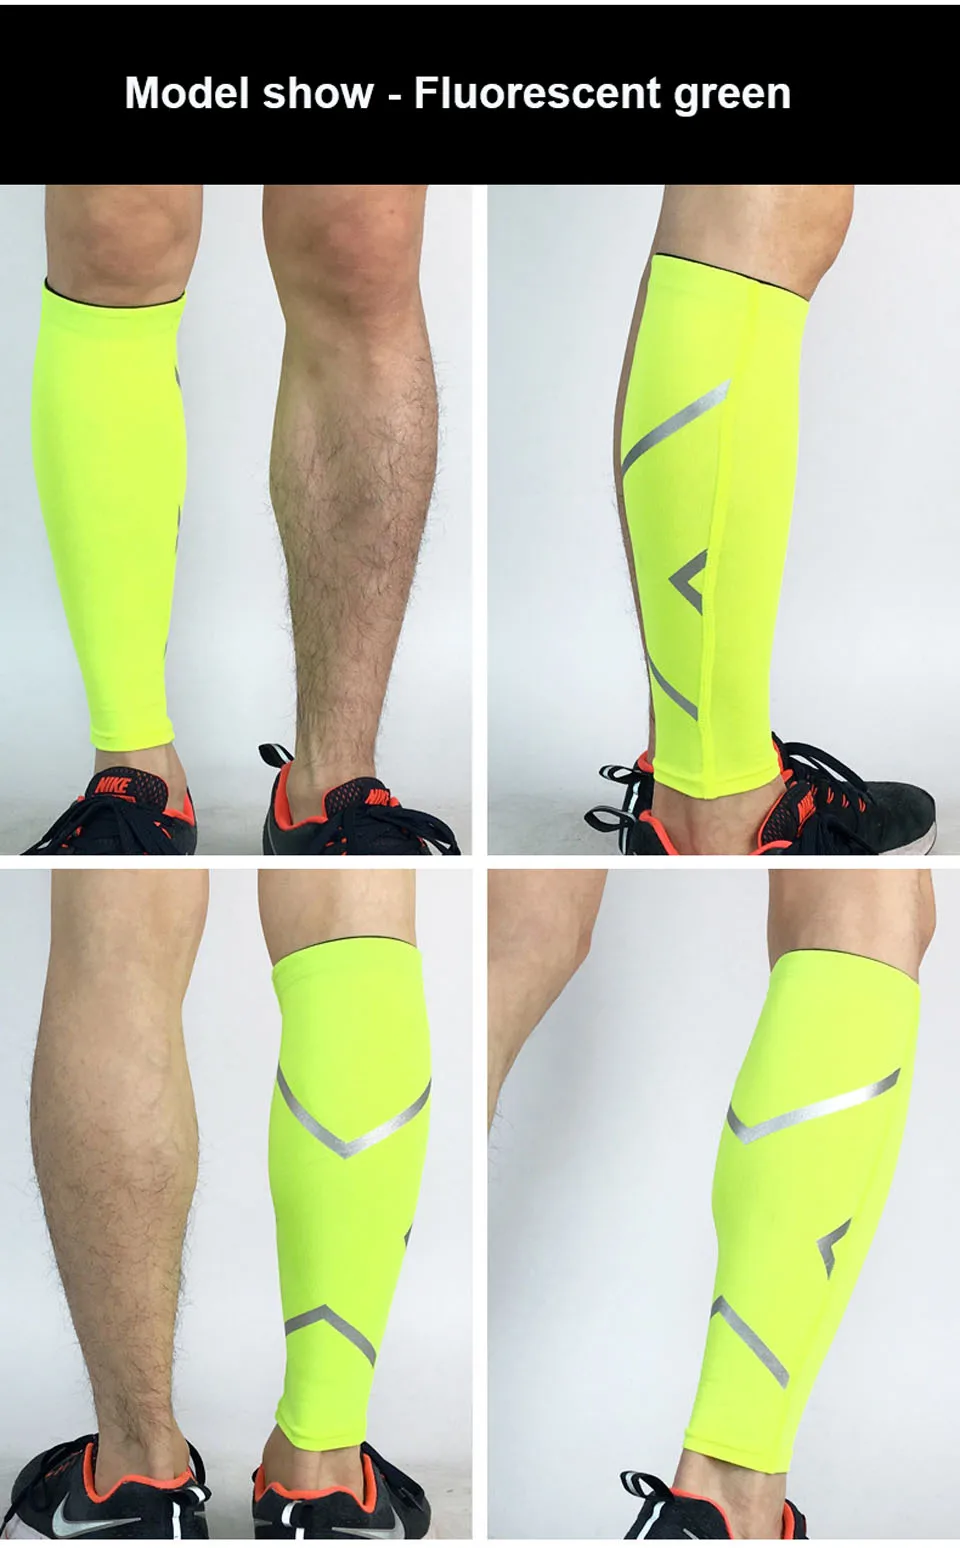 GOBYGO 1 шт. для мужчин/для женщин Велоспорт гетры дышащие Баскетбол Футбол Бег сжатия нога колено рукав pad спортивная защита